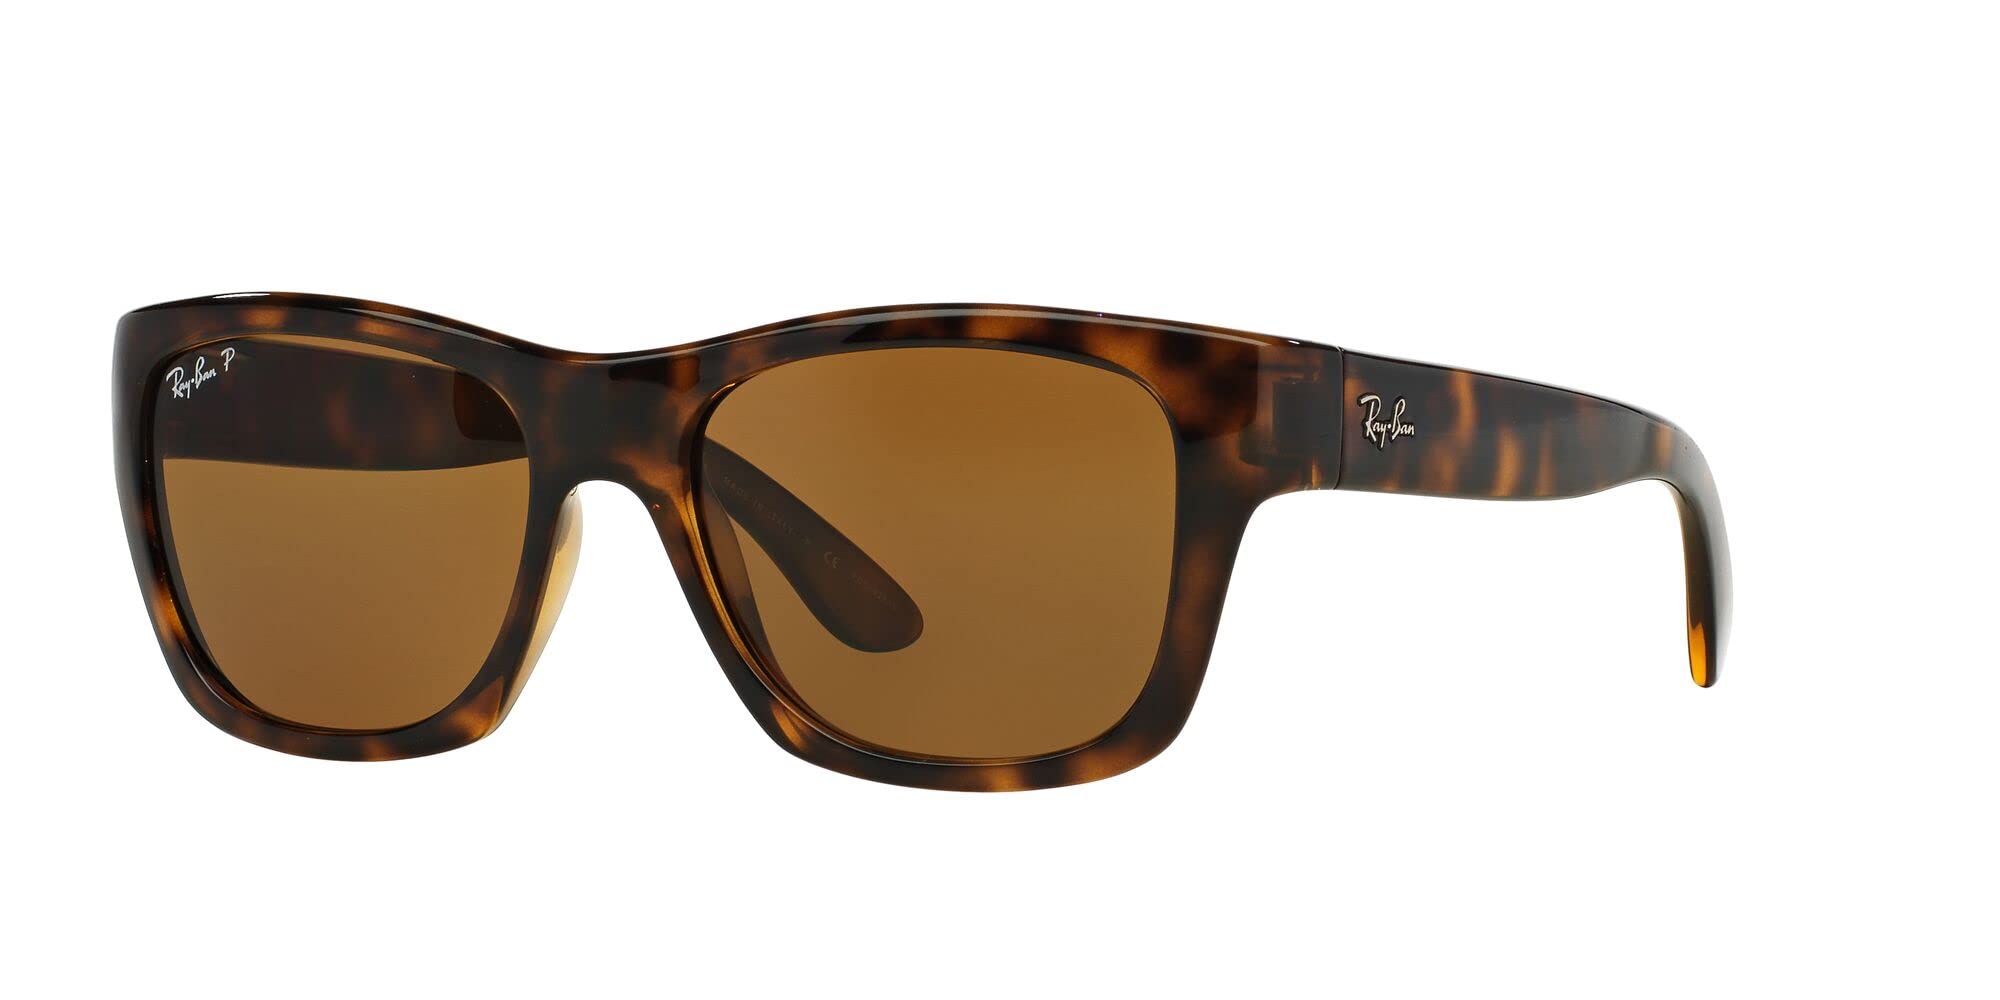 Ray-Ban Unisex Sunglasses Light Havana Frame, Brown Gradient Lenses, 53MM